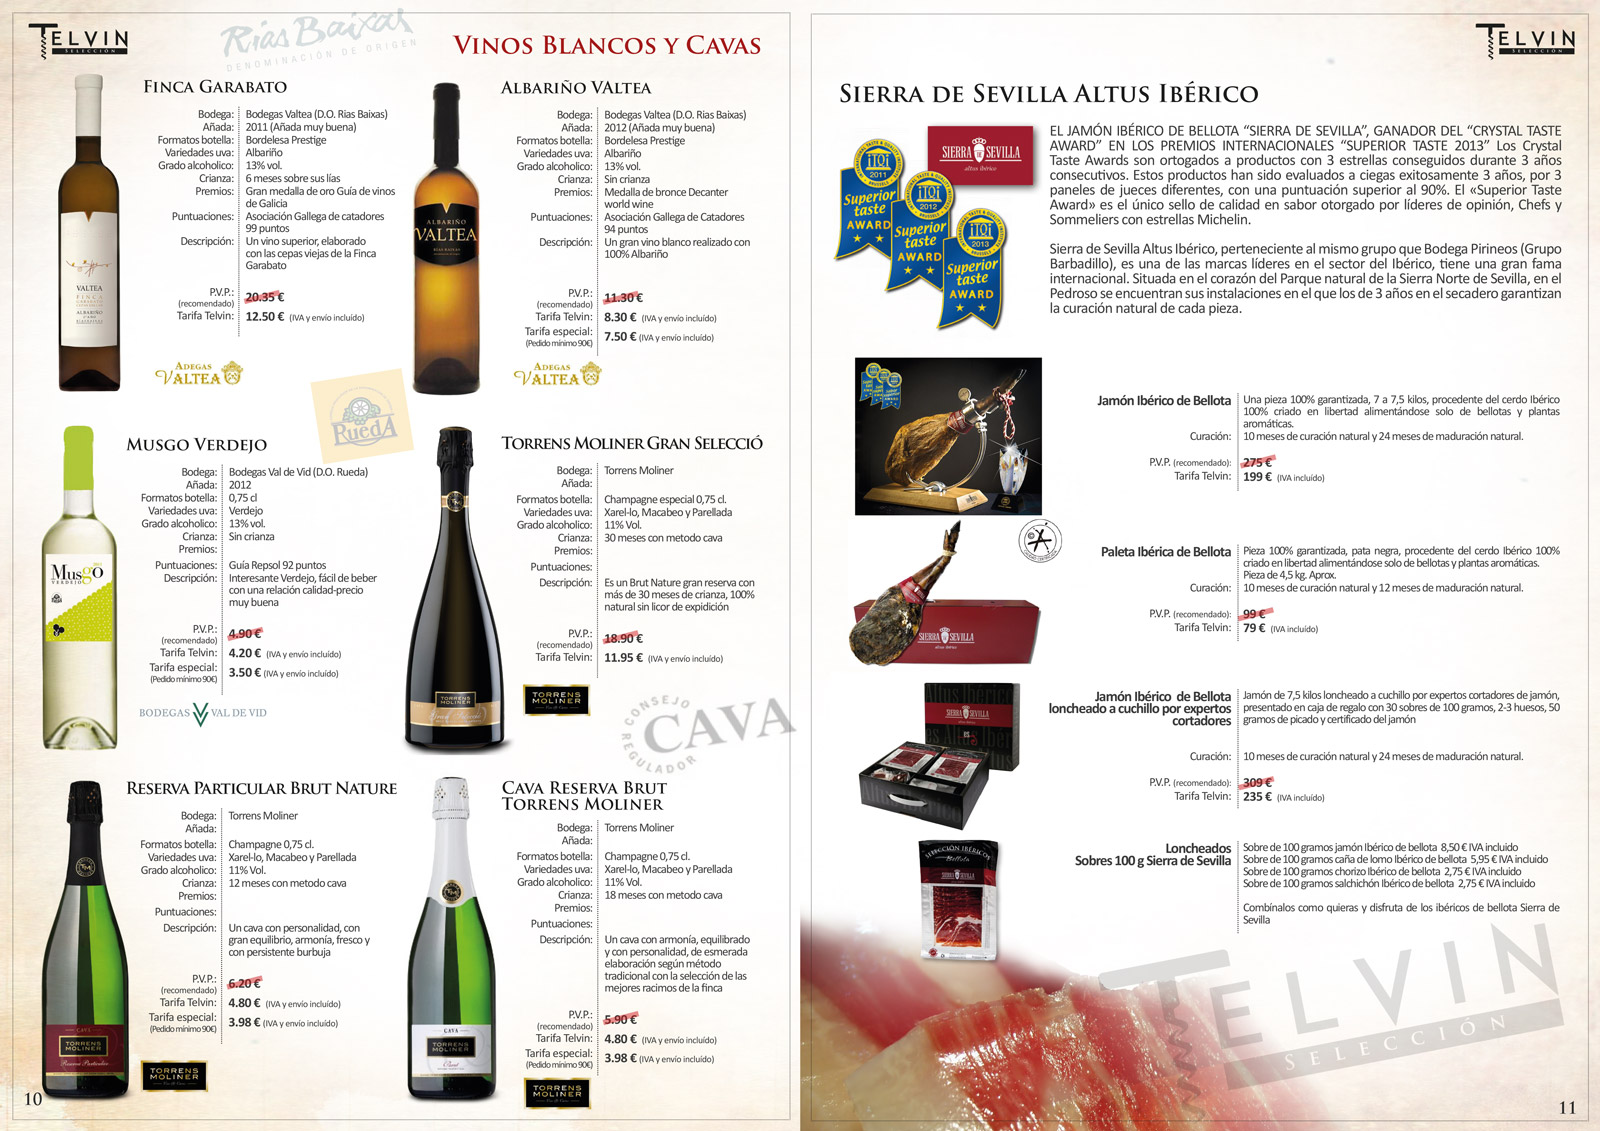 Diseño de logo, marca, imagen corporativa y catálogos para vinos y bodegas Telvin Aragón